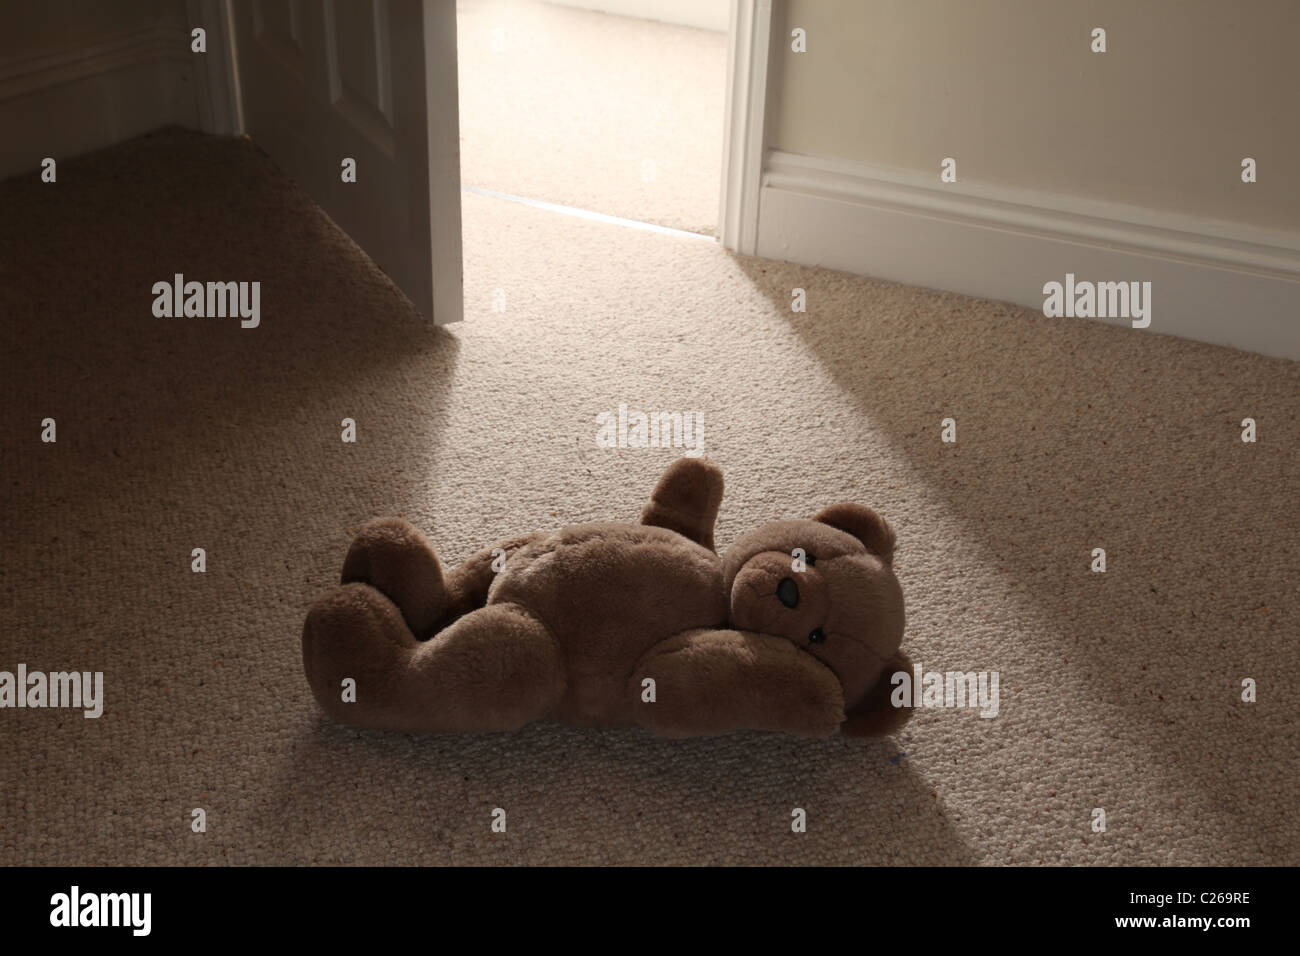 Ein Teddy auf dem Boden durch eine offene Tür. Stockfoto